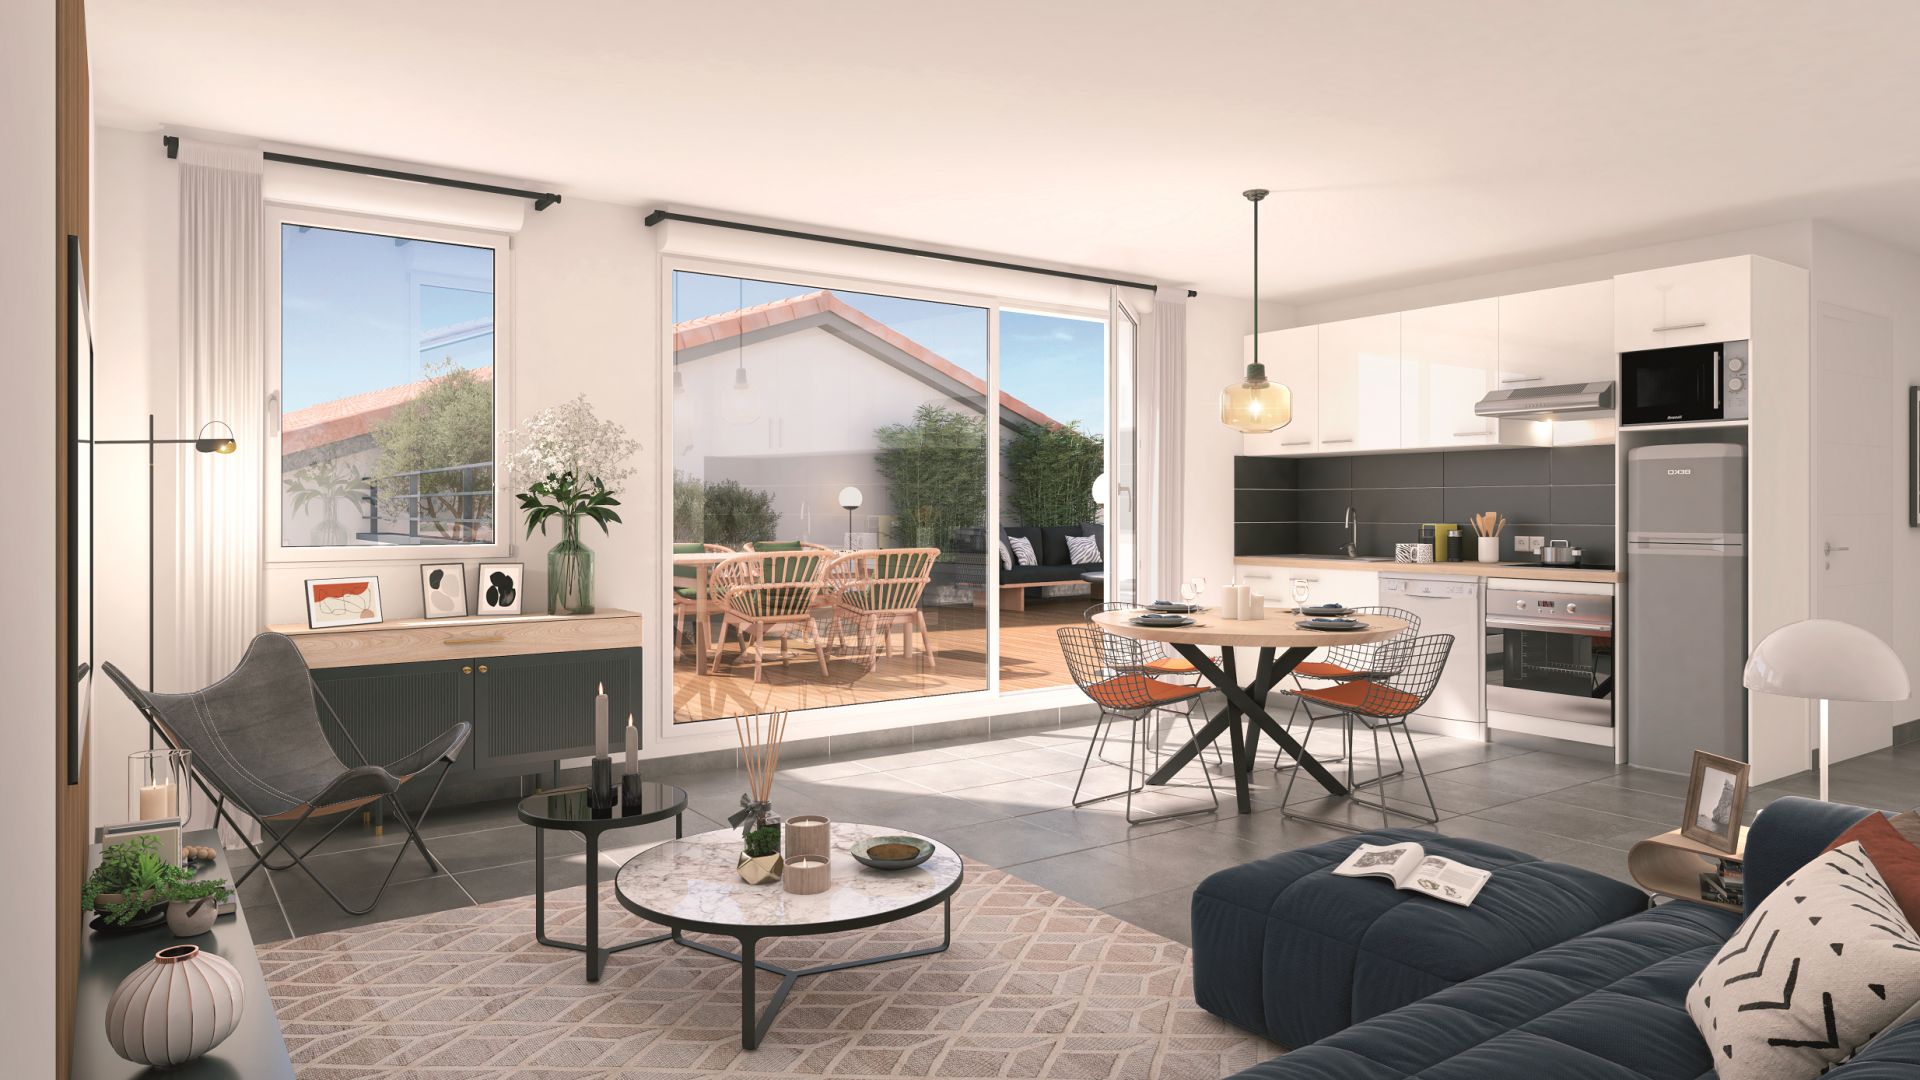 Greencity immobilier - achat appartements neufs du T2 au T3 - Résidence Le Toscan - 31600 Muret Centre ville - vue intérieure